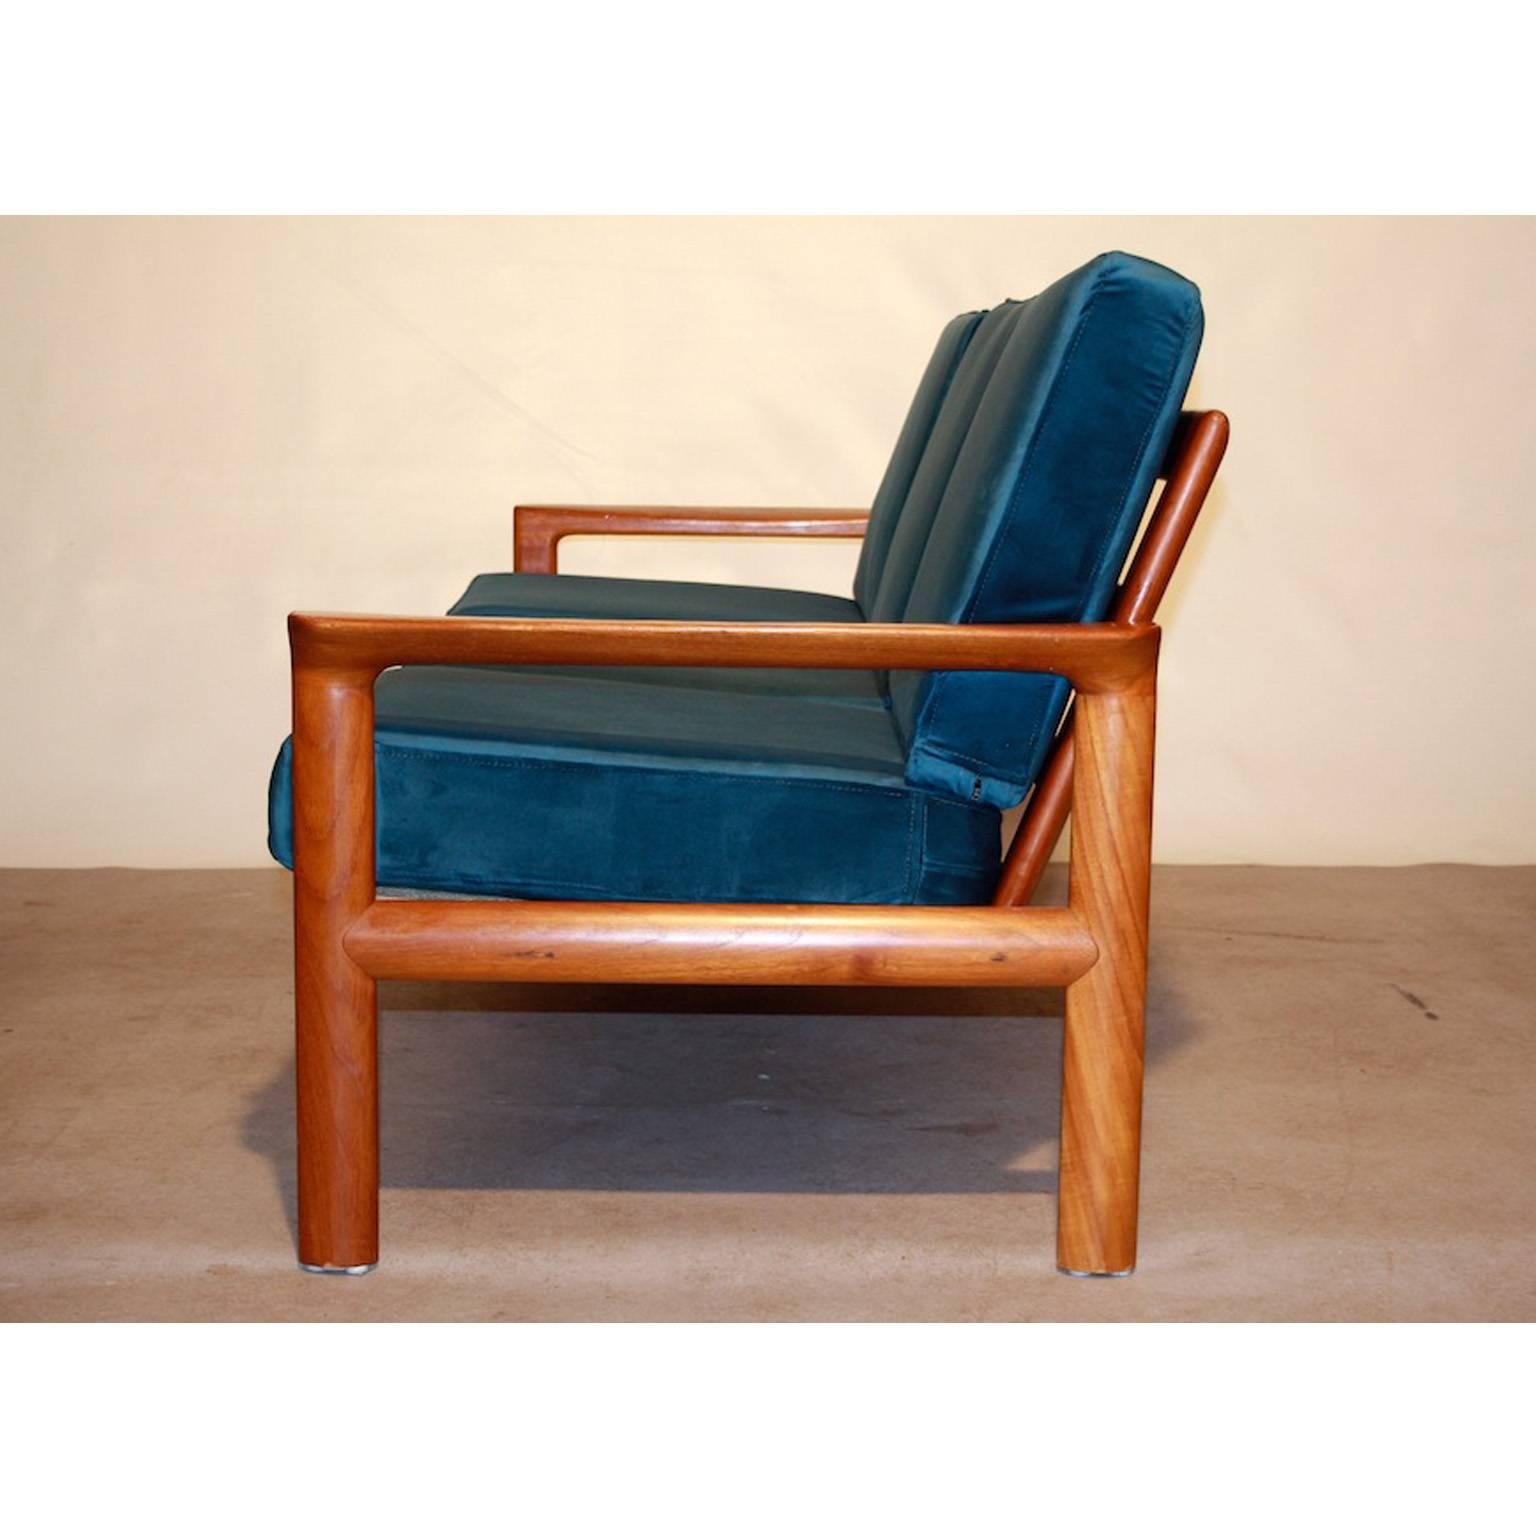 Scandinavian Modern Sven Ellekaer for Komfort Sofa “Borneo”, Denmark, 1960s